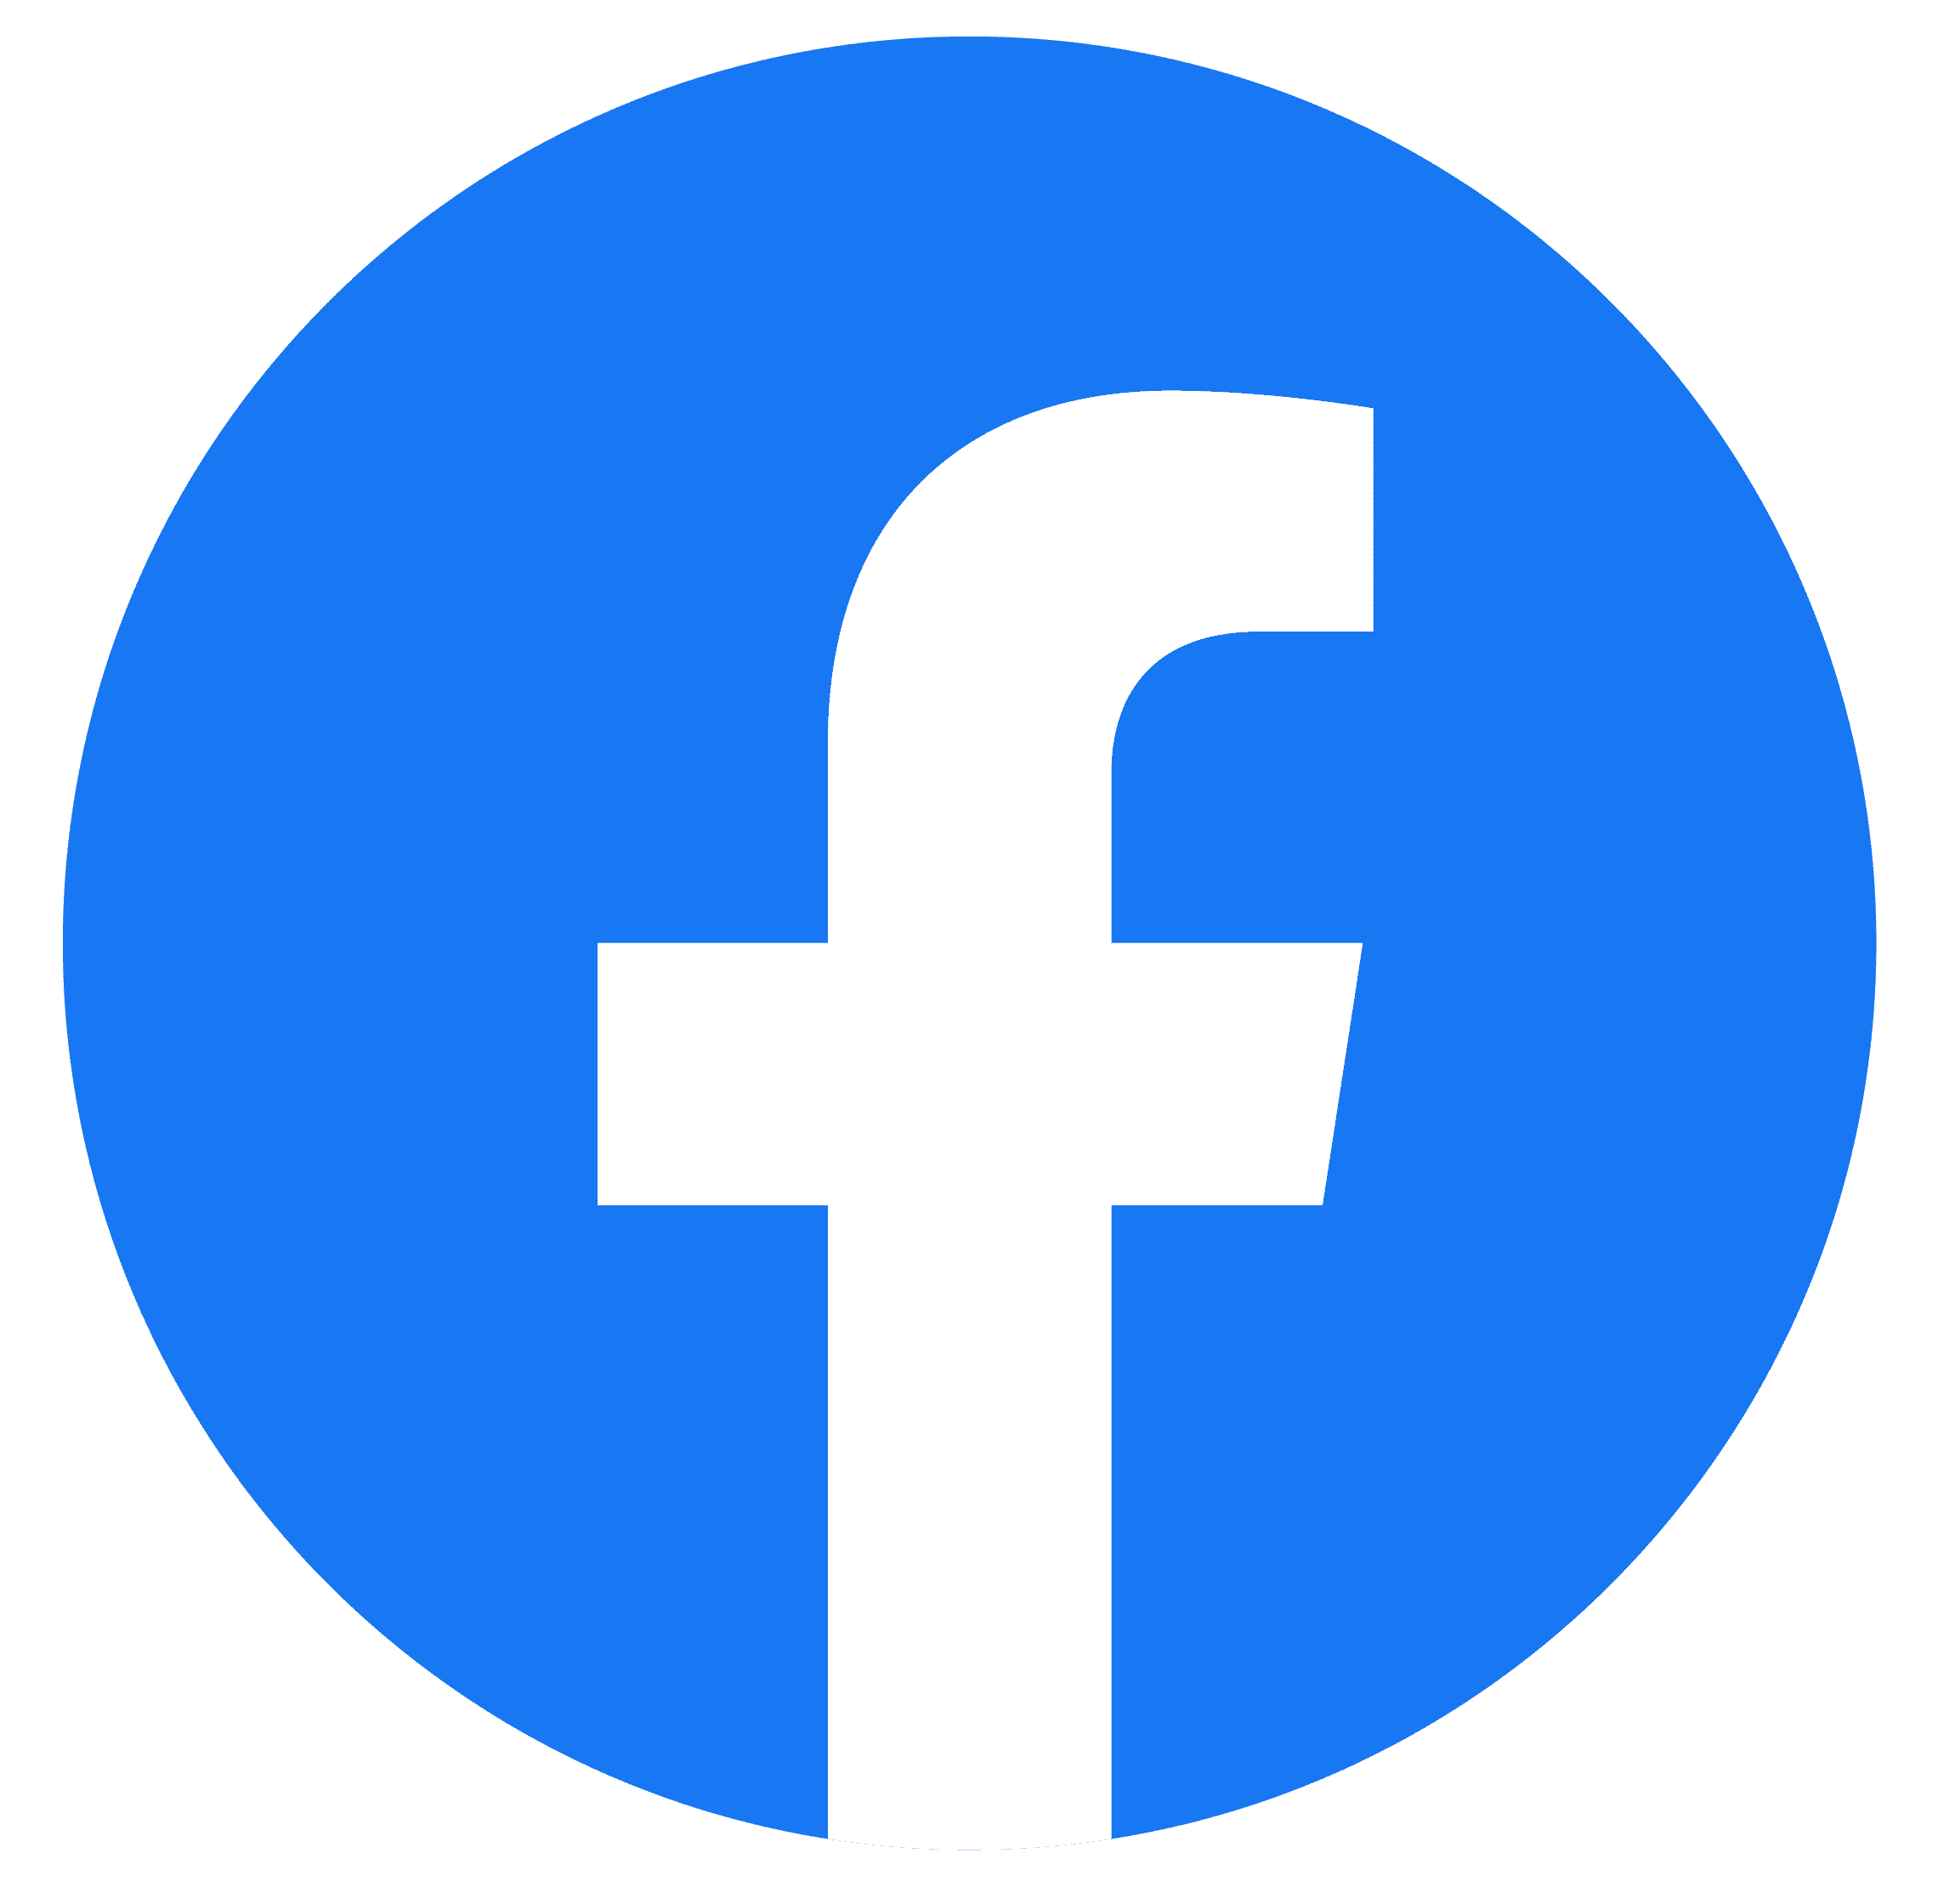 facebook logo senior tuber community